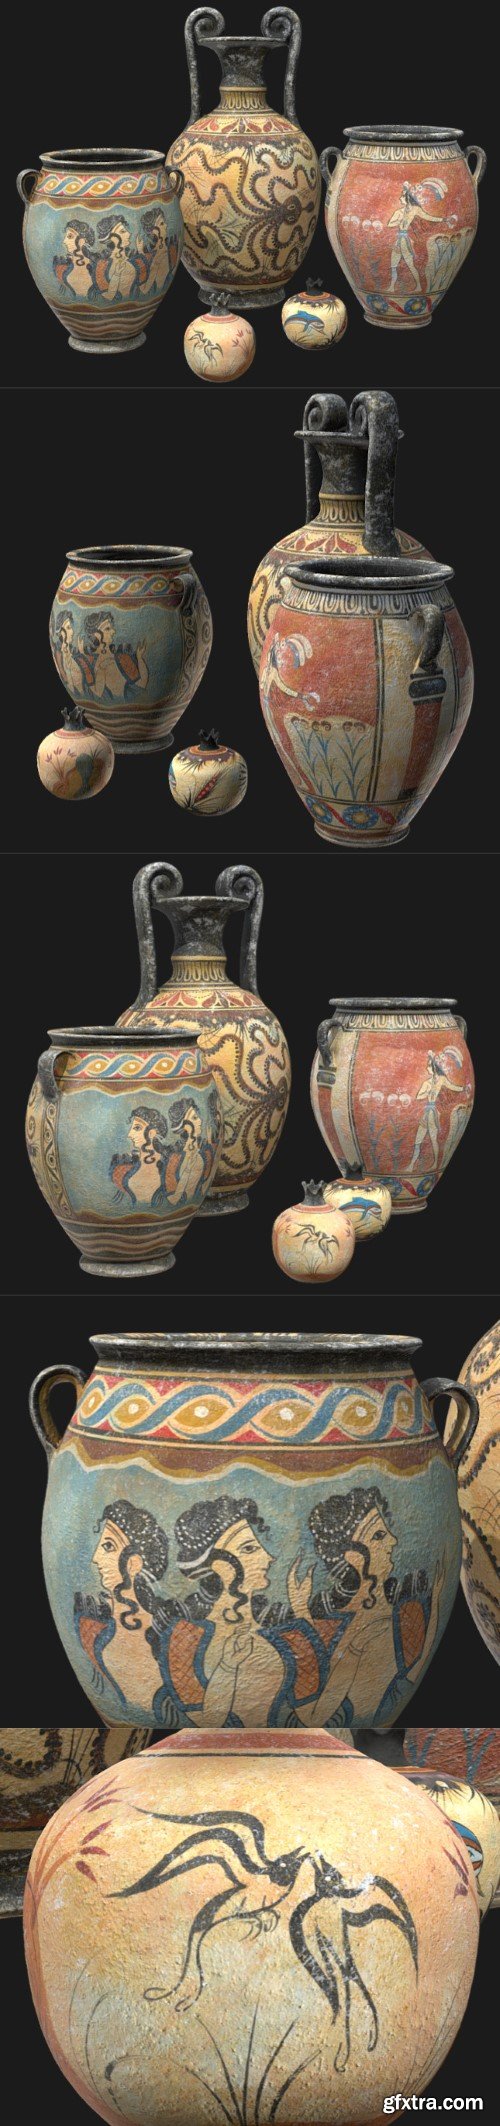 Minoan Pottery 3D Model